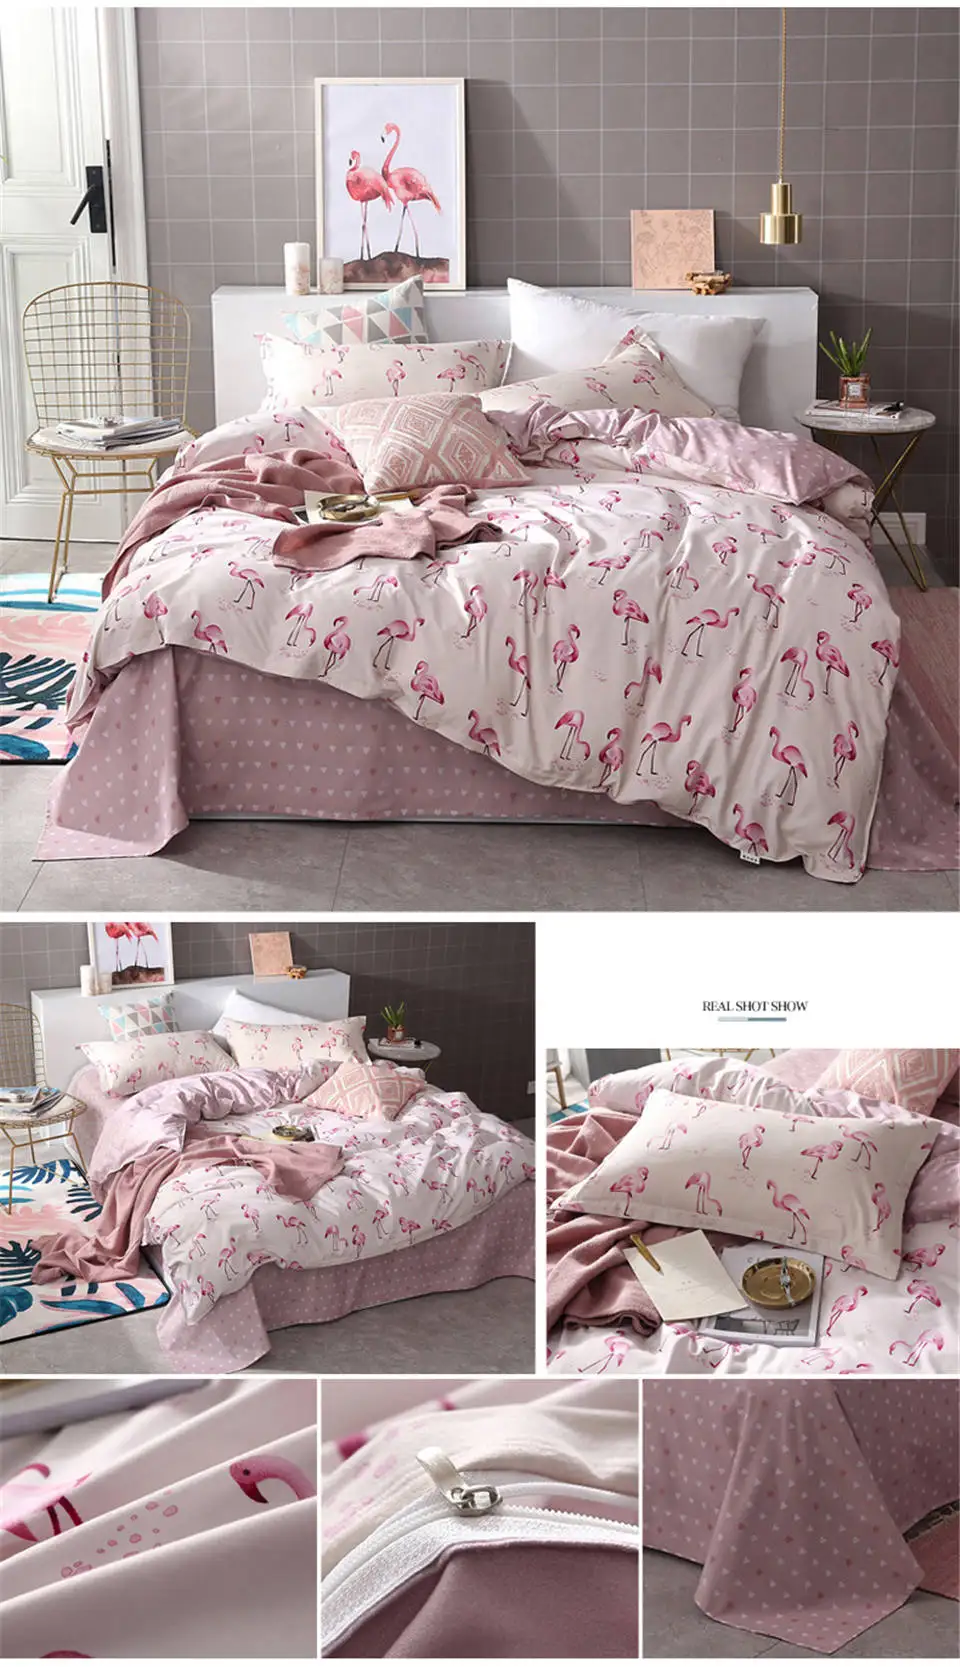 Комплект постельного белья ParkShin, одеяло, пододеяльник, двойной комплект постельного белья для взрослых, розовое евро покрывало, королева, король, Комплект постельного белья